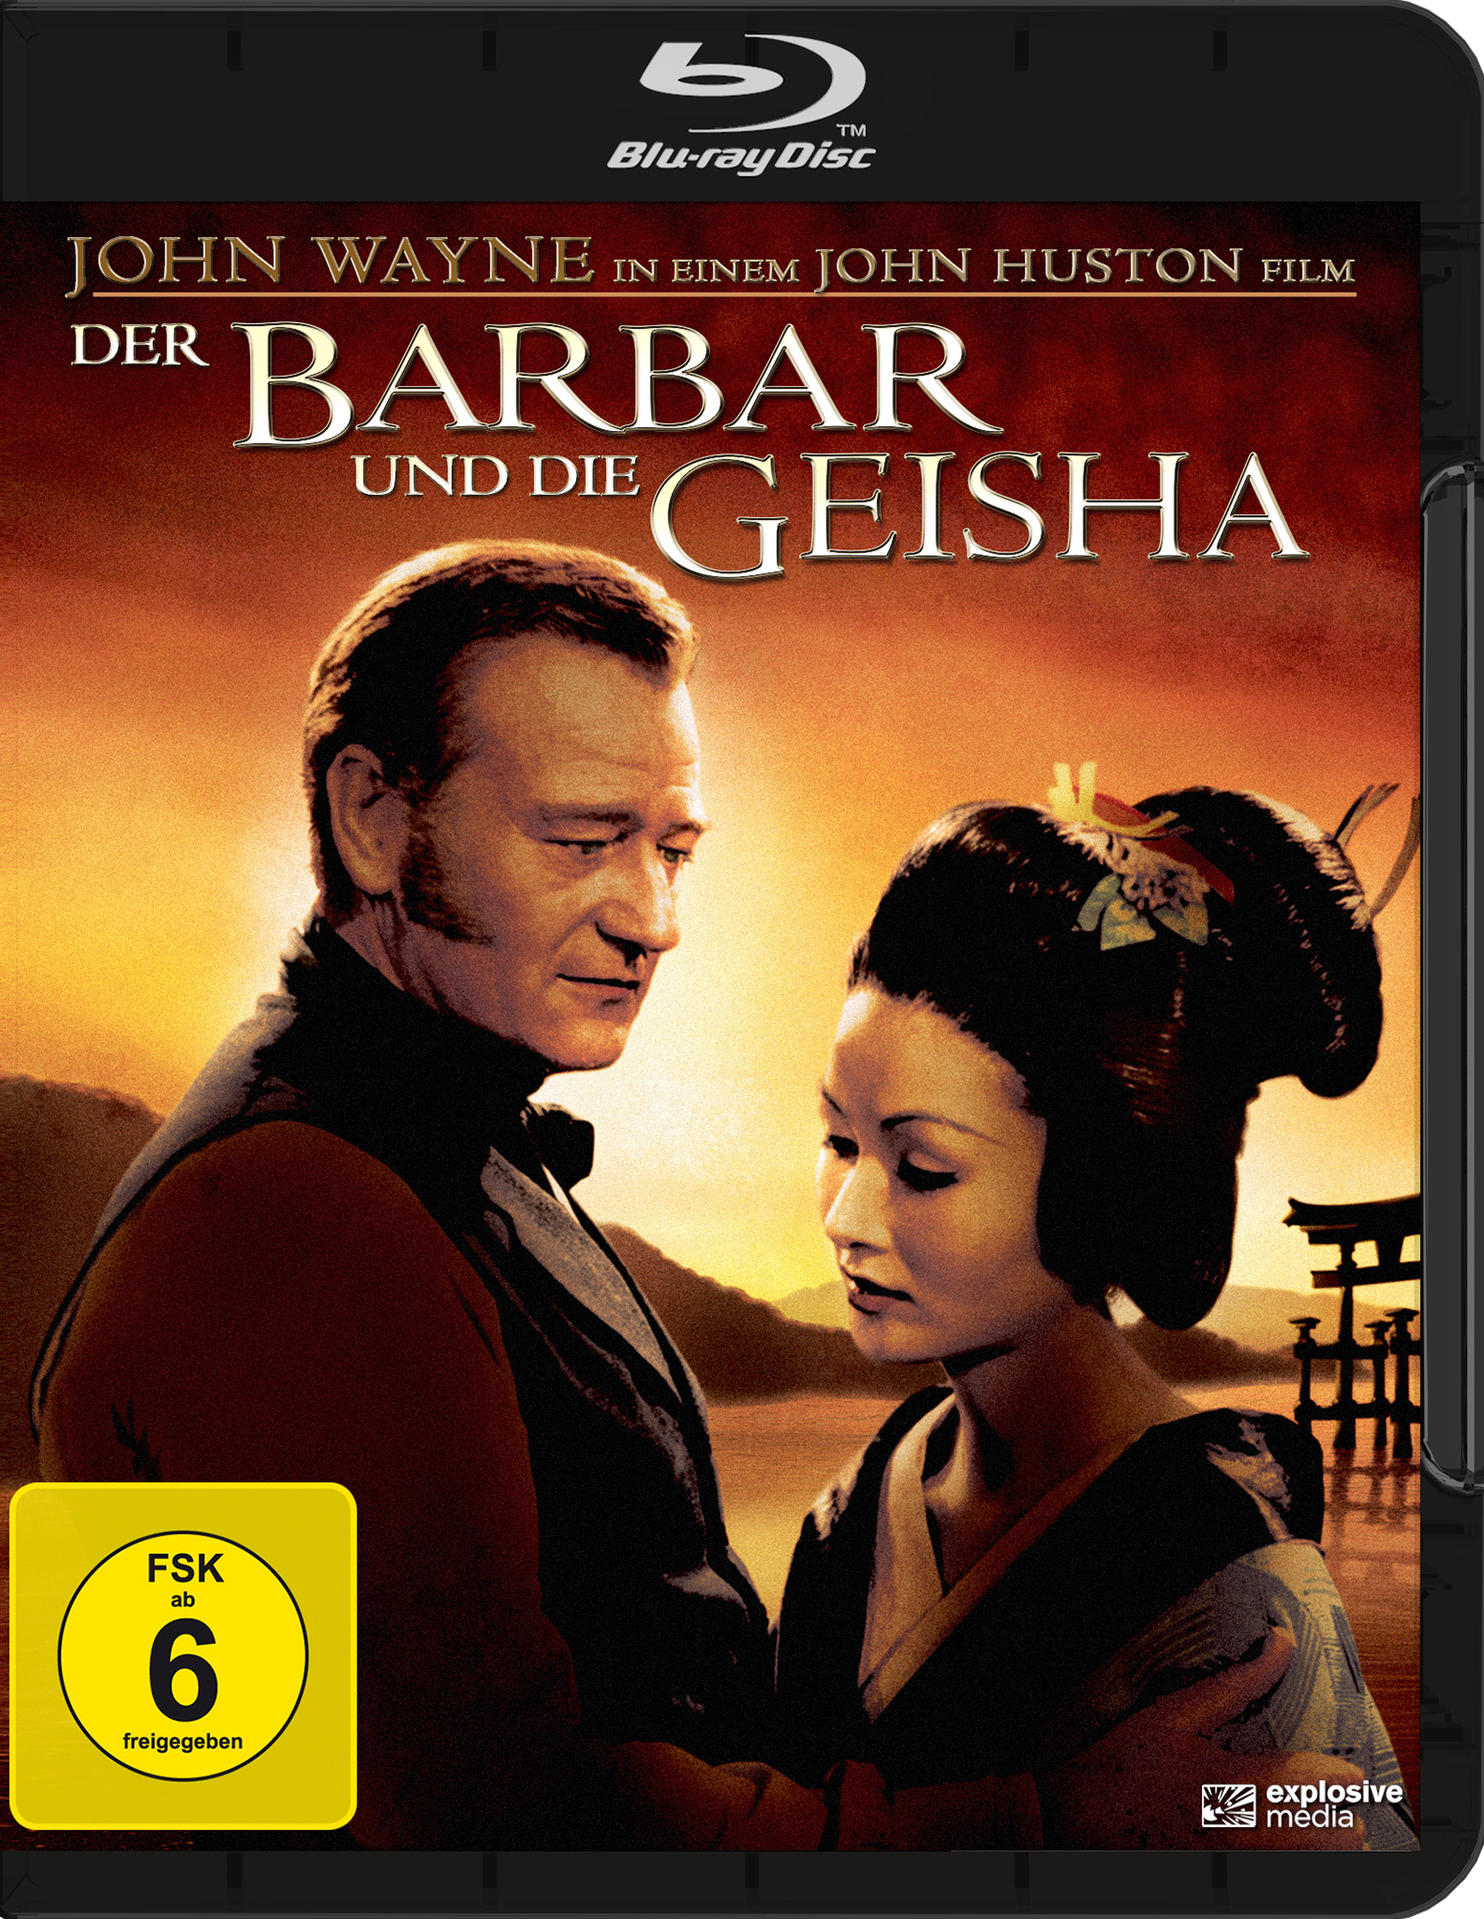 Blu-ray Geisha Barbar die und Der